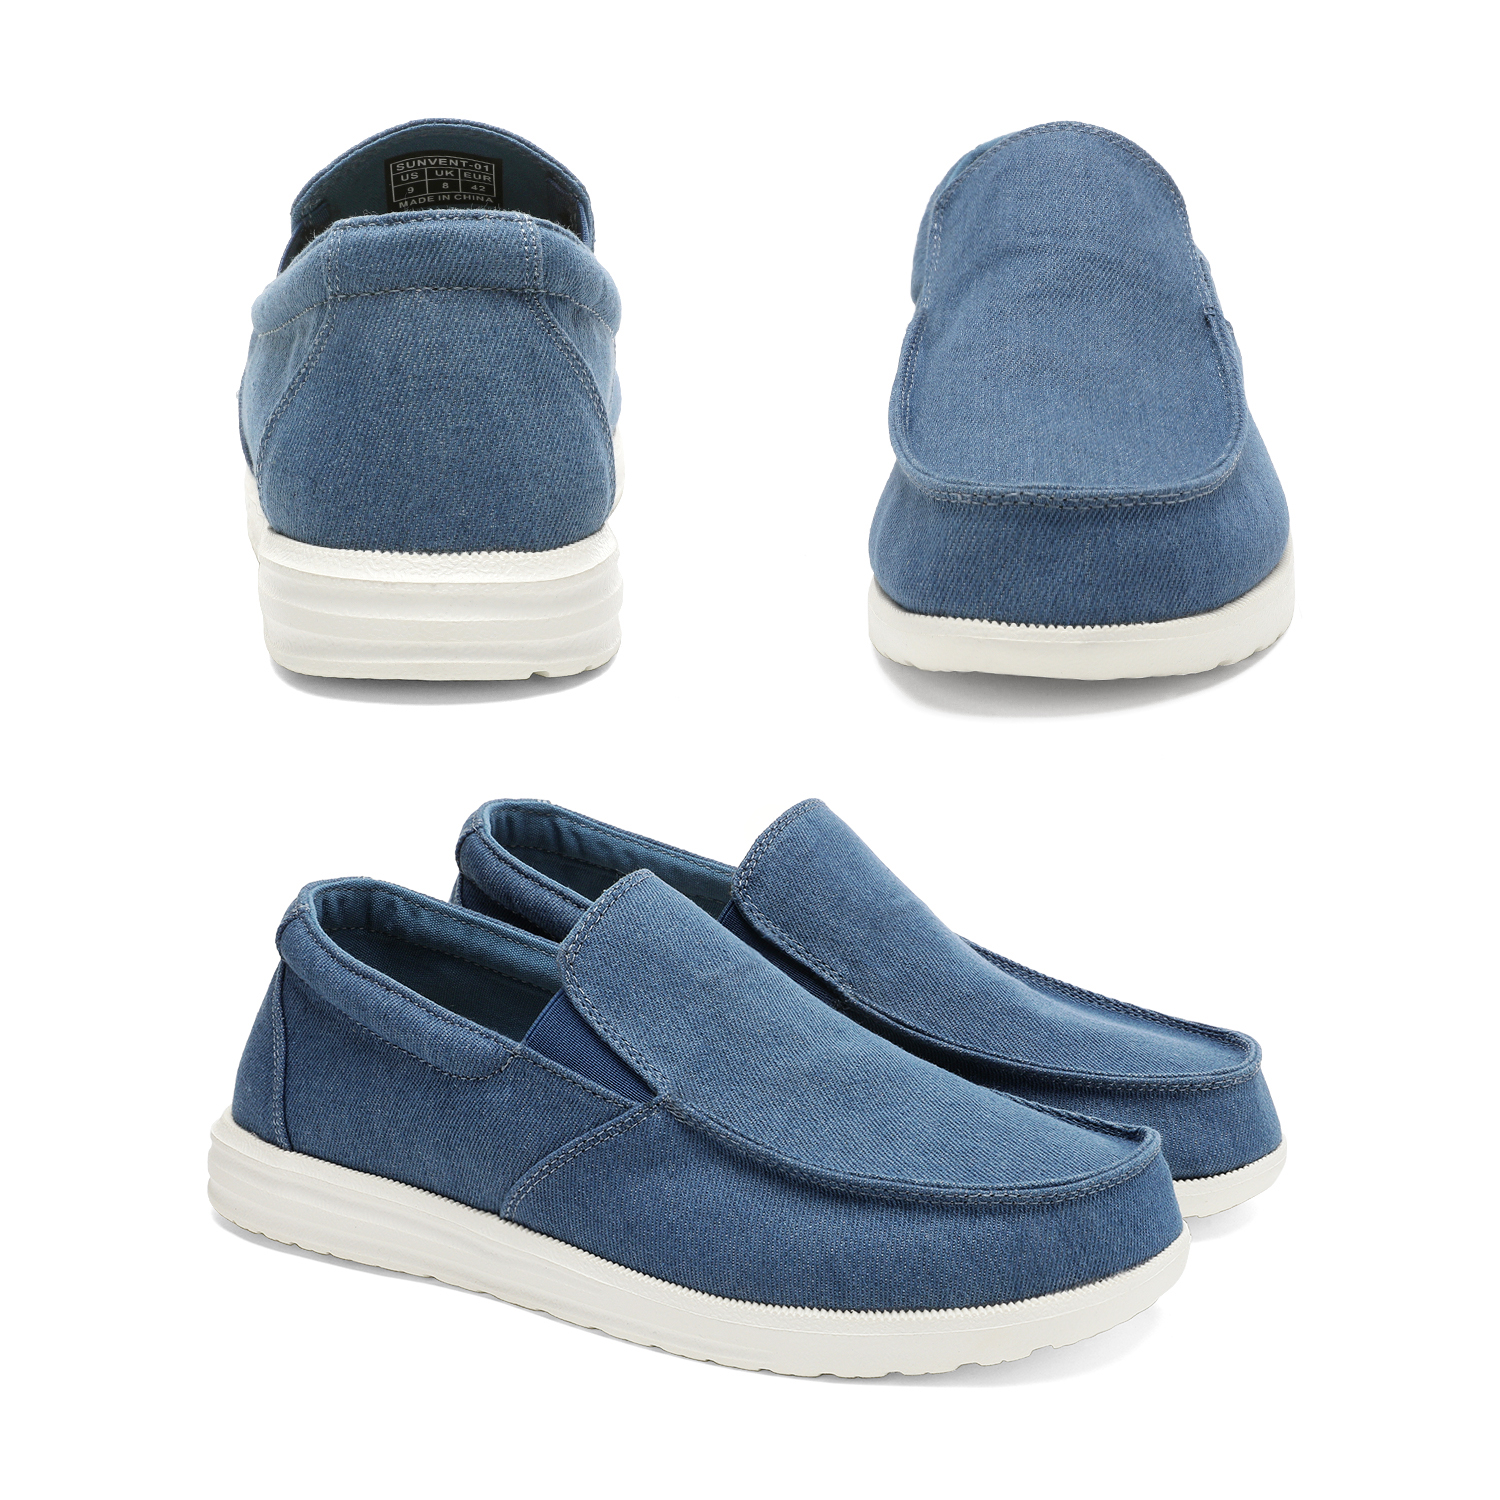 Bruno Marc Men's Slip On Loafer Walking Shoes SUNVENT-01 BLUE/DENIM size 8 - image 5 of 6